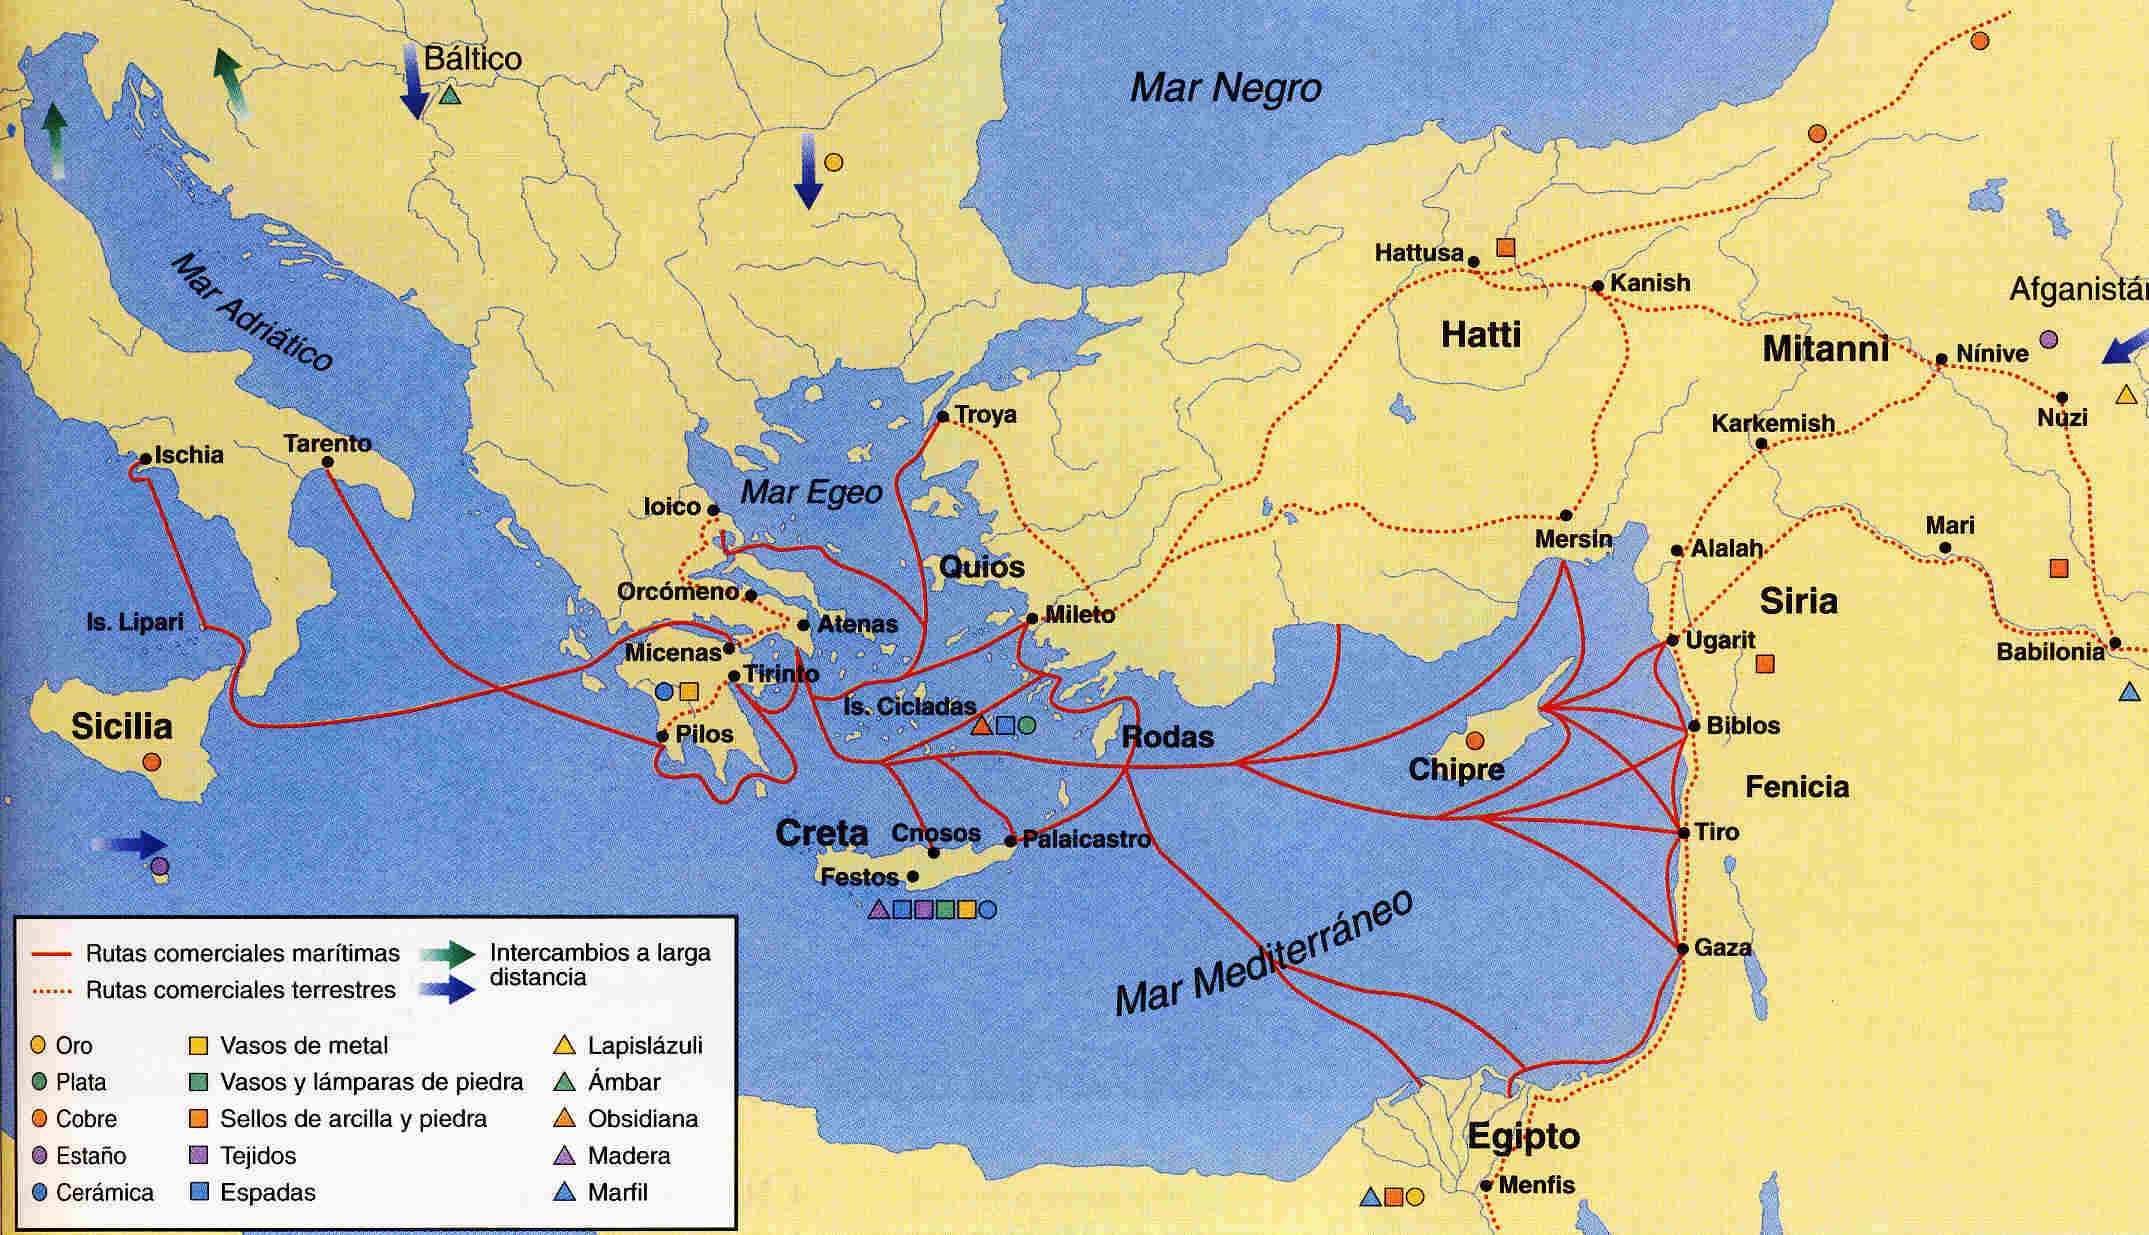 Troya 1 en Grecia clásica 14